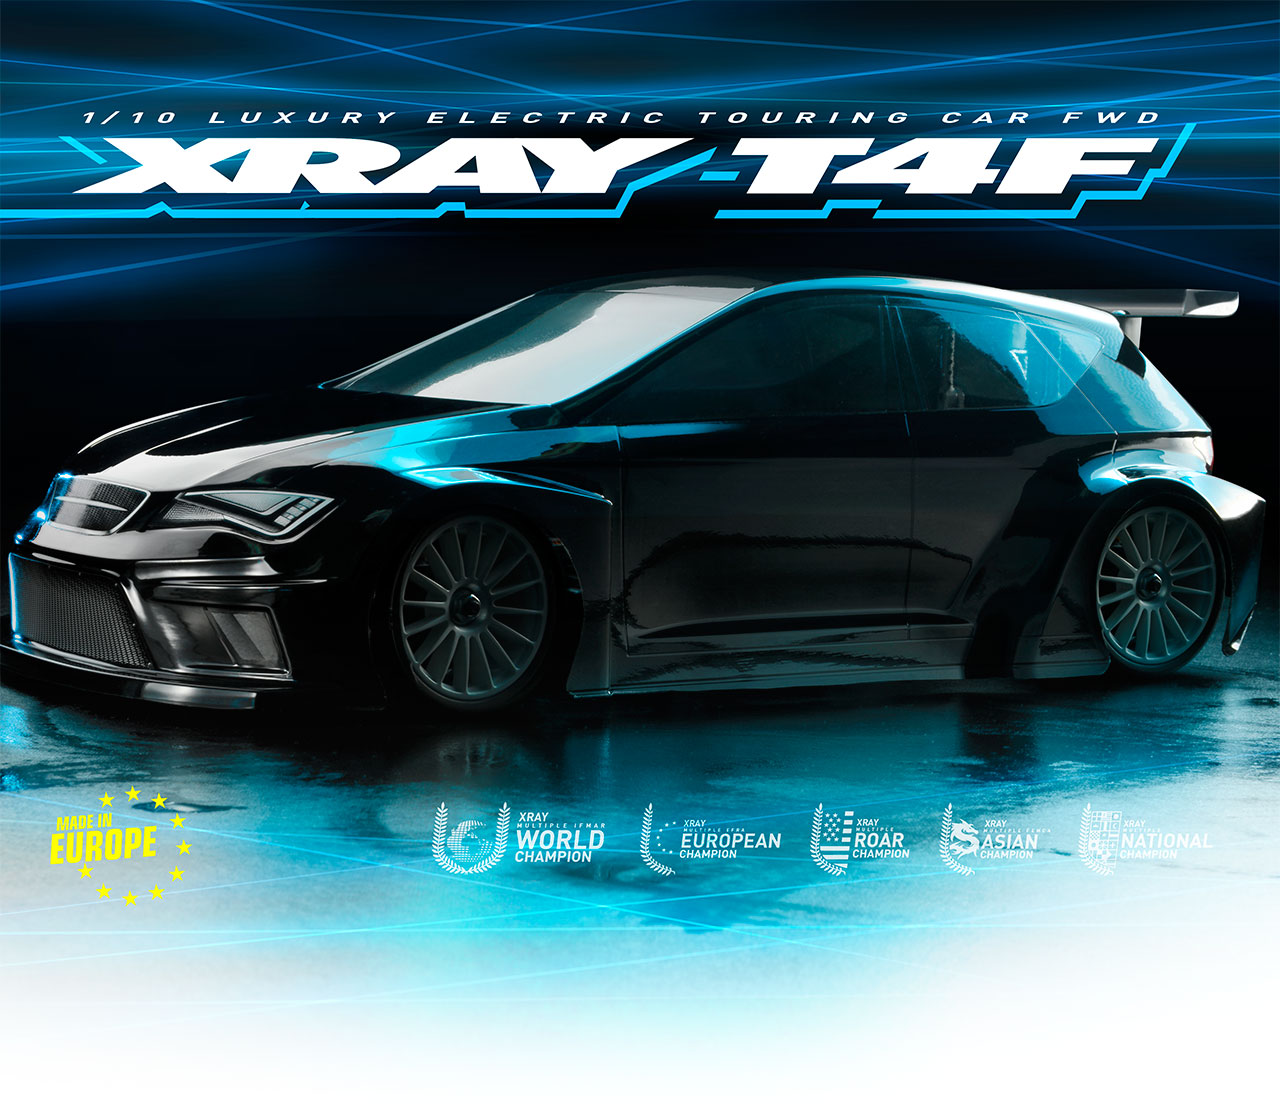 xray touring car